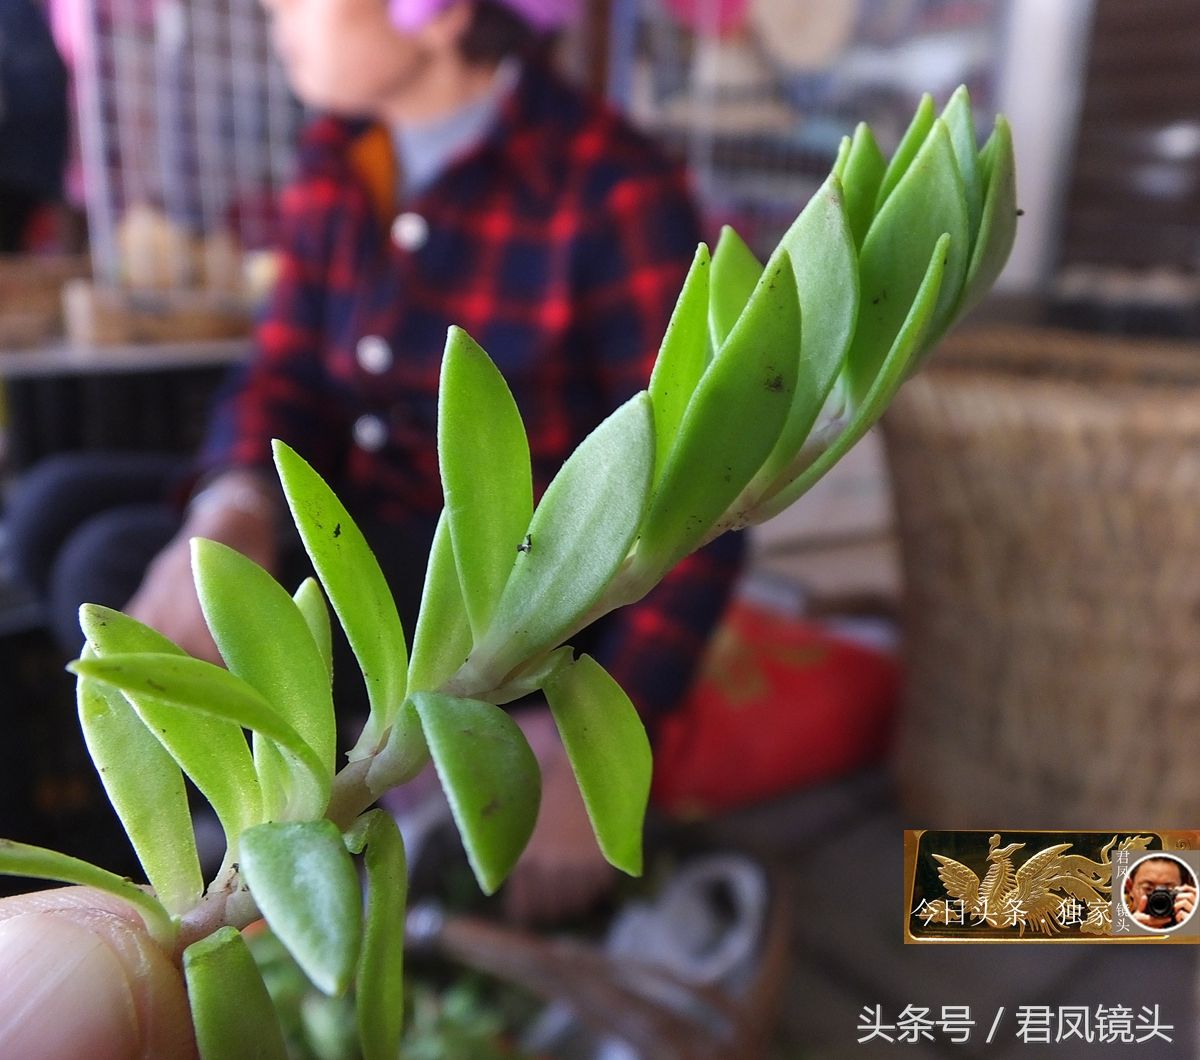 湖北宜昌:景区趣闻,农妇把草药当野菜卖,垂盆草